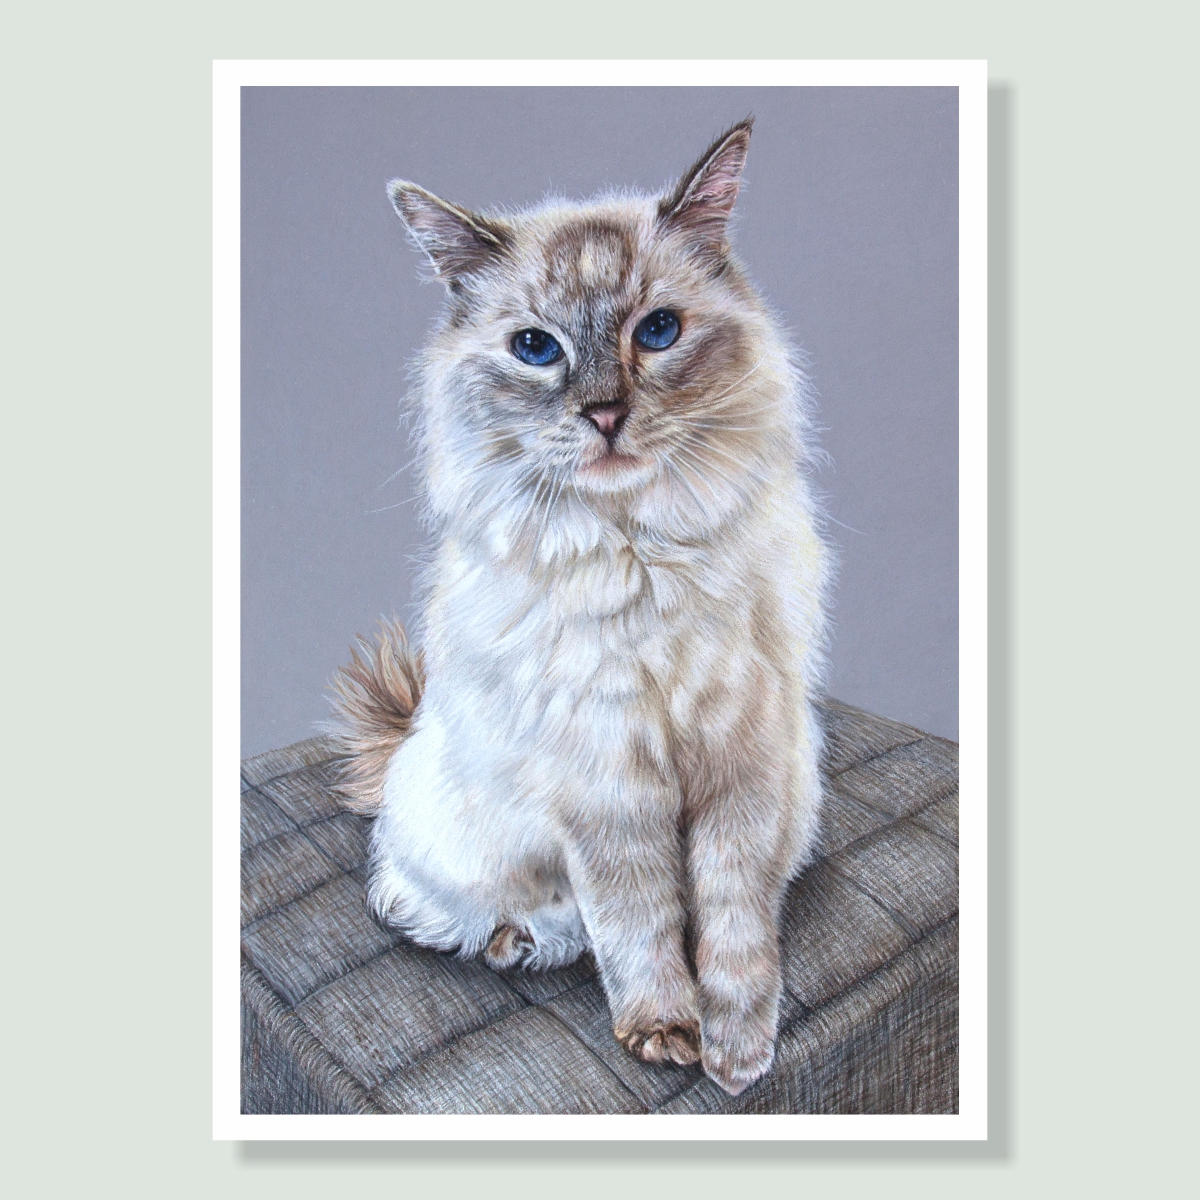 Chelsea - coloured pastel cat portrait by pet artist Angie.